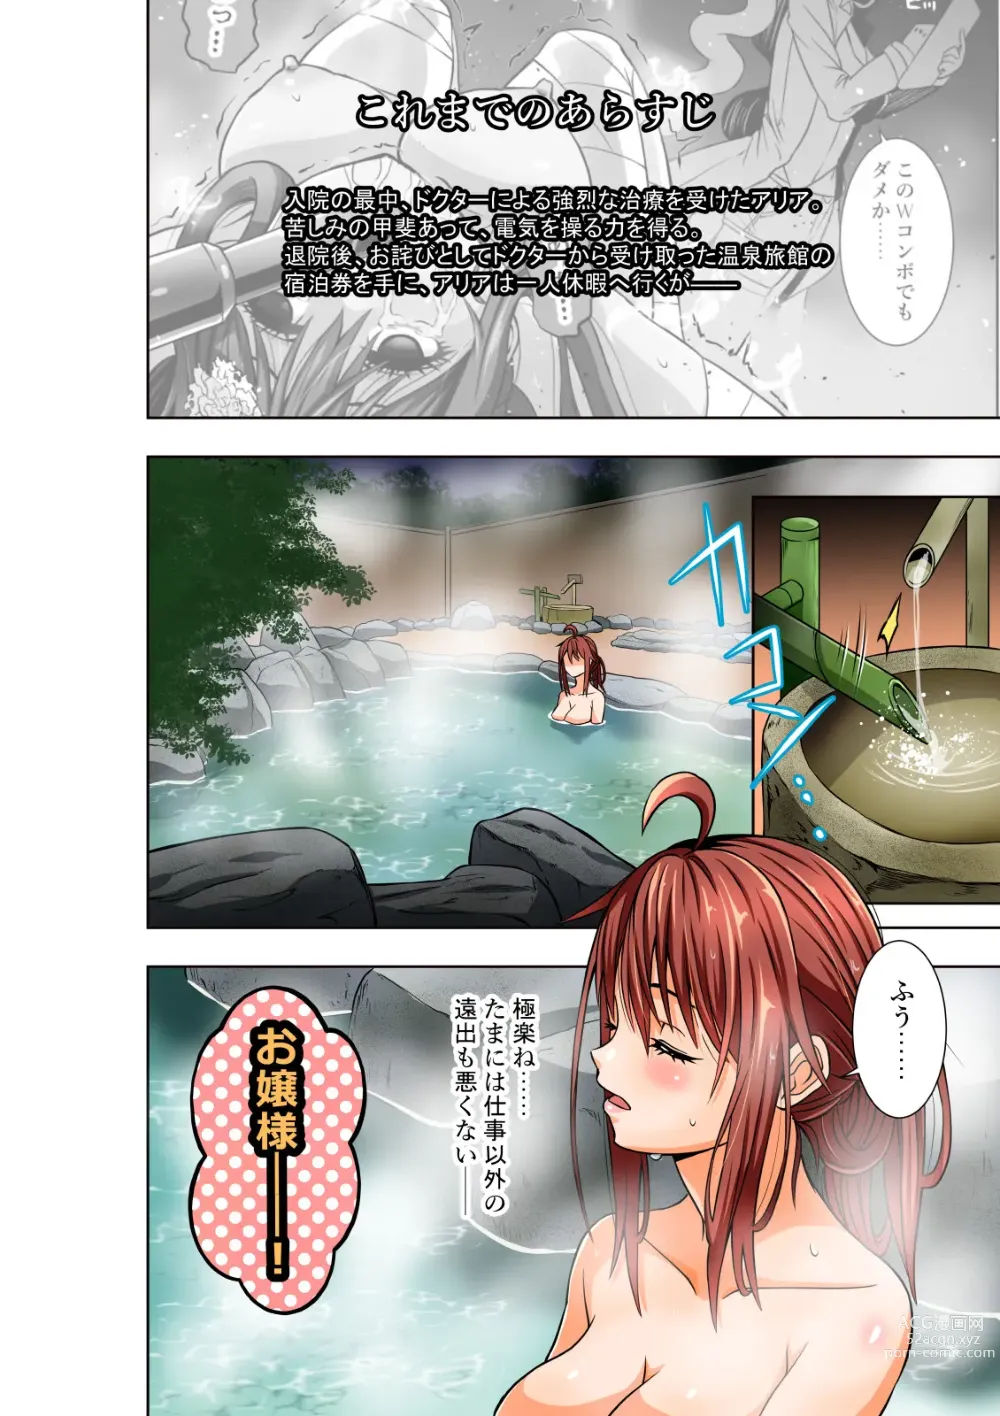 Page 3 of doujinshi BOUNTY HUNTER GIRL vs TWIN HENTAI Ch. 25